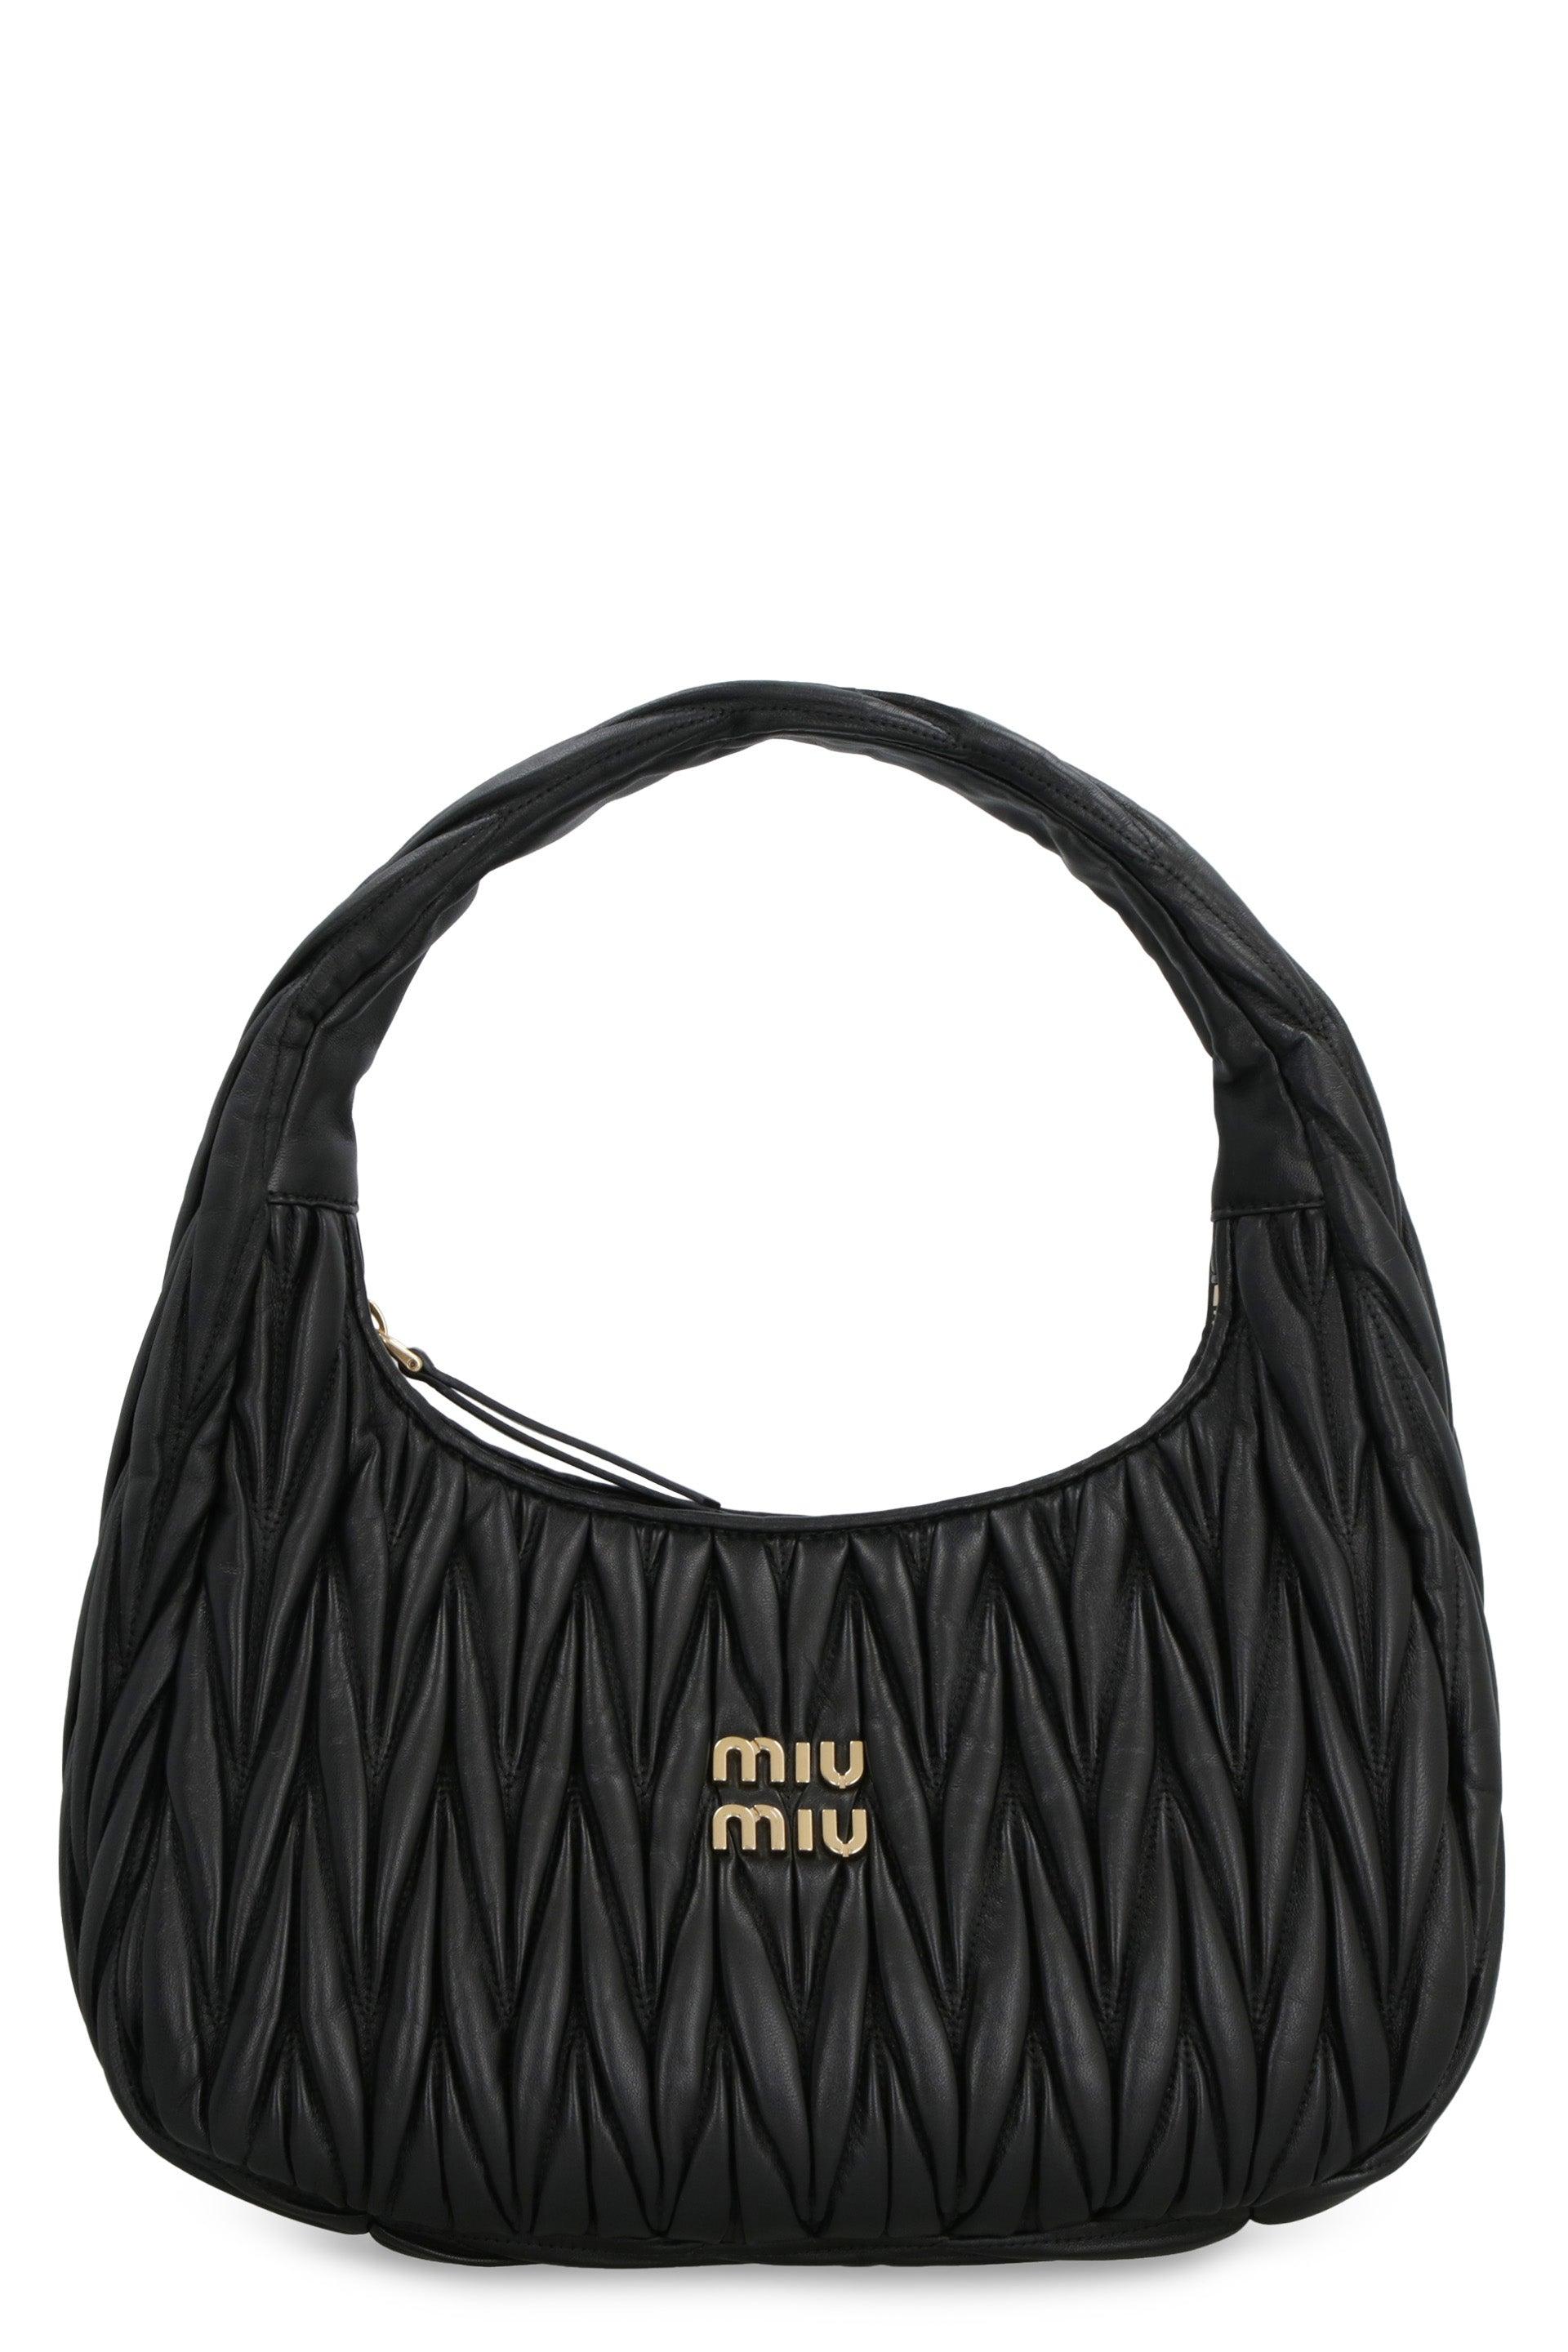 Miu Miu 'hobo Miu Wander' Bag in Black